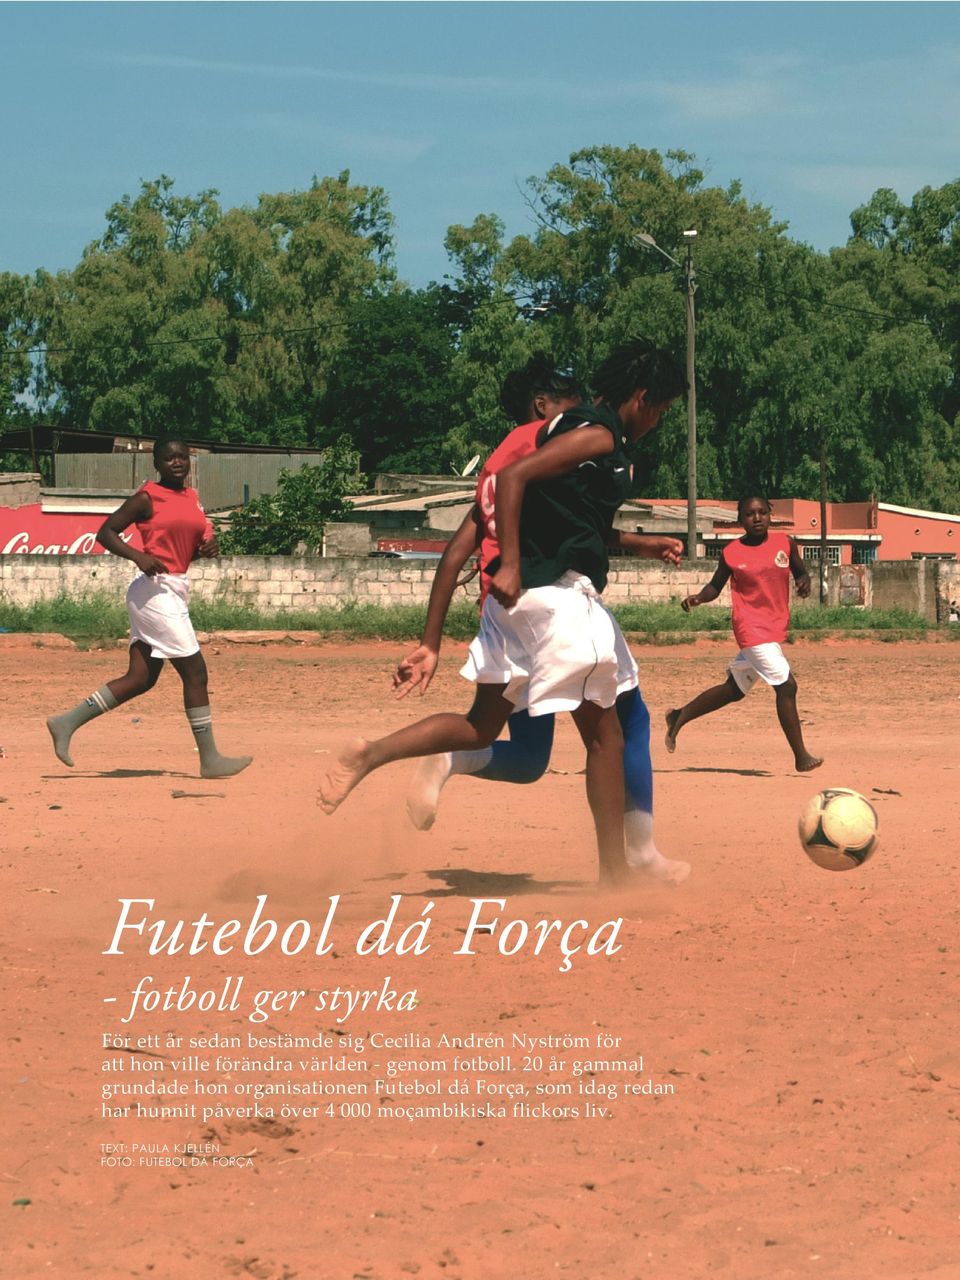 20 år gammal grundade hon organisationen Futebol dá Força, som idag redan har